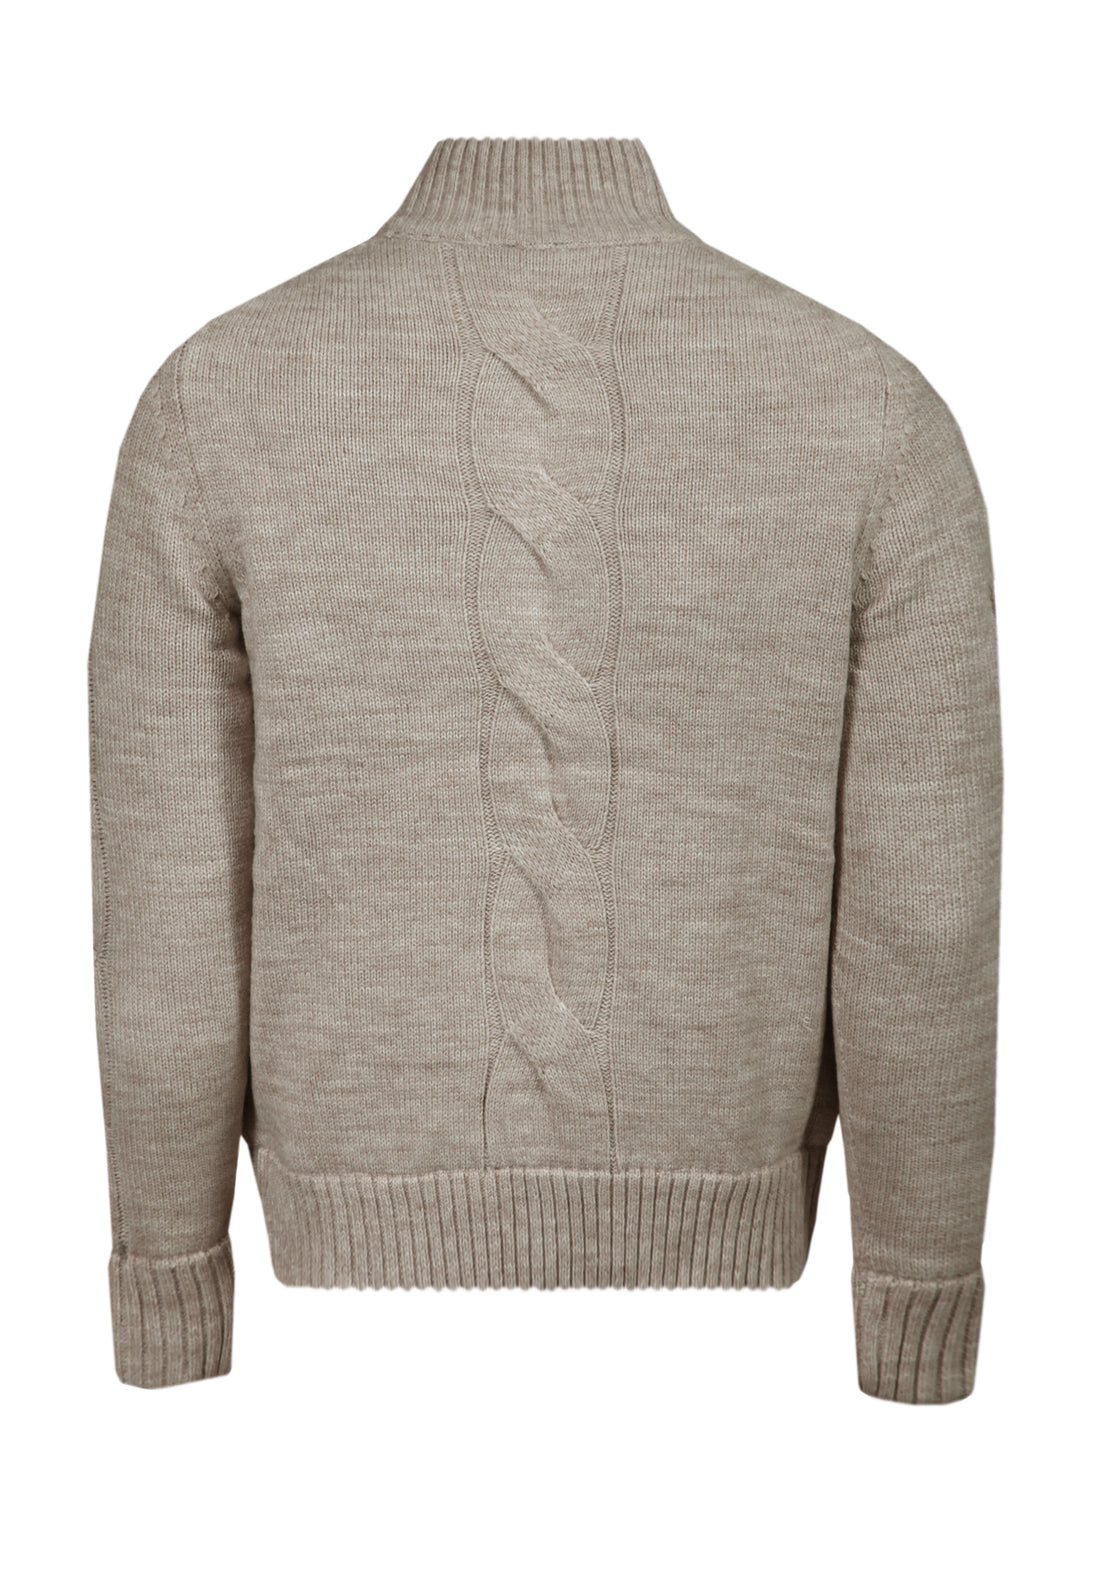 Braid sweater with internal fur - Beige